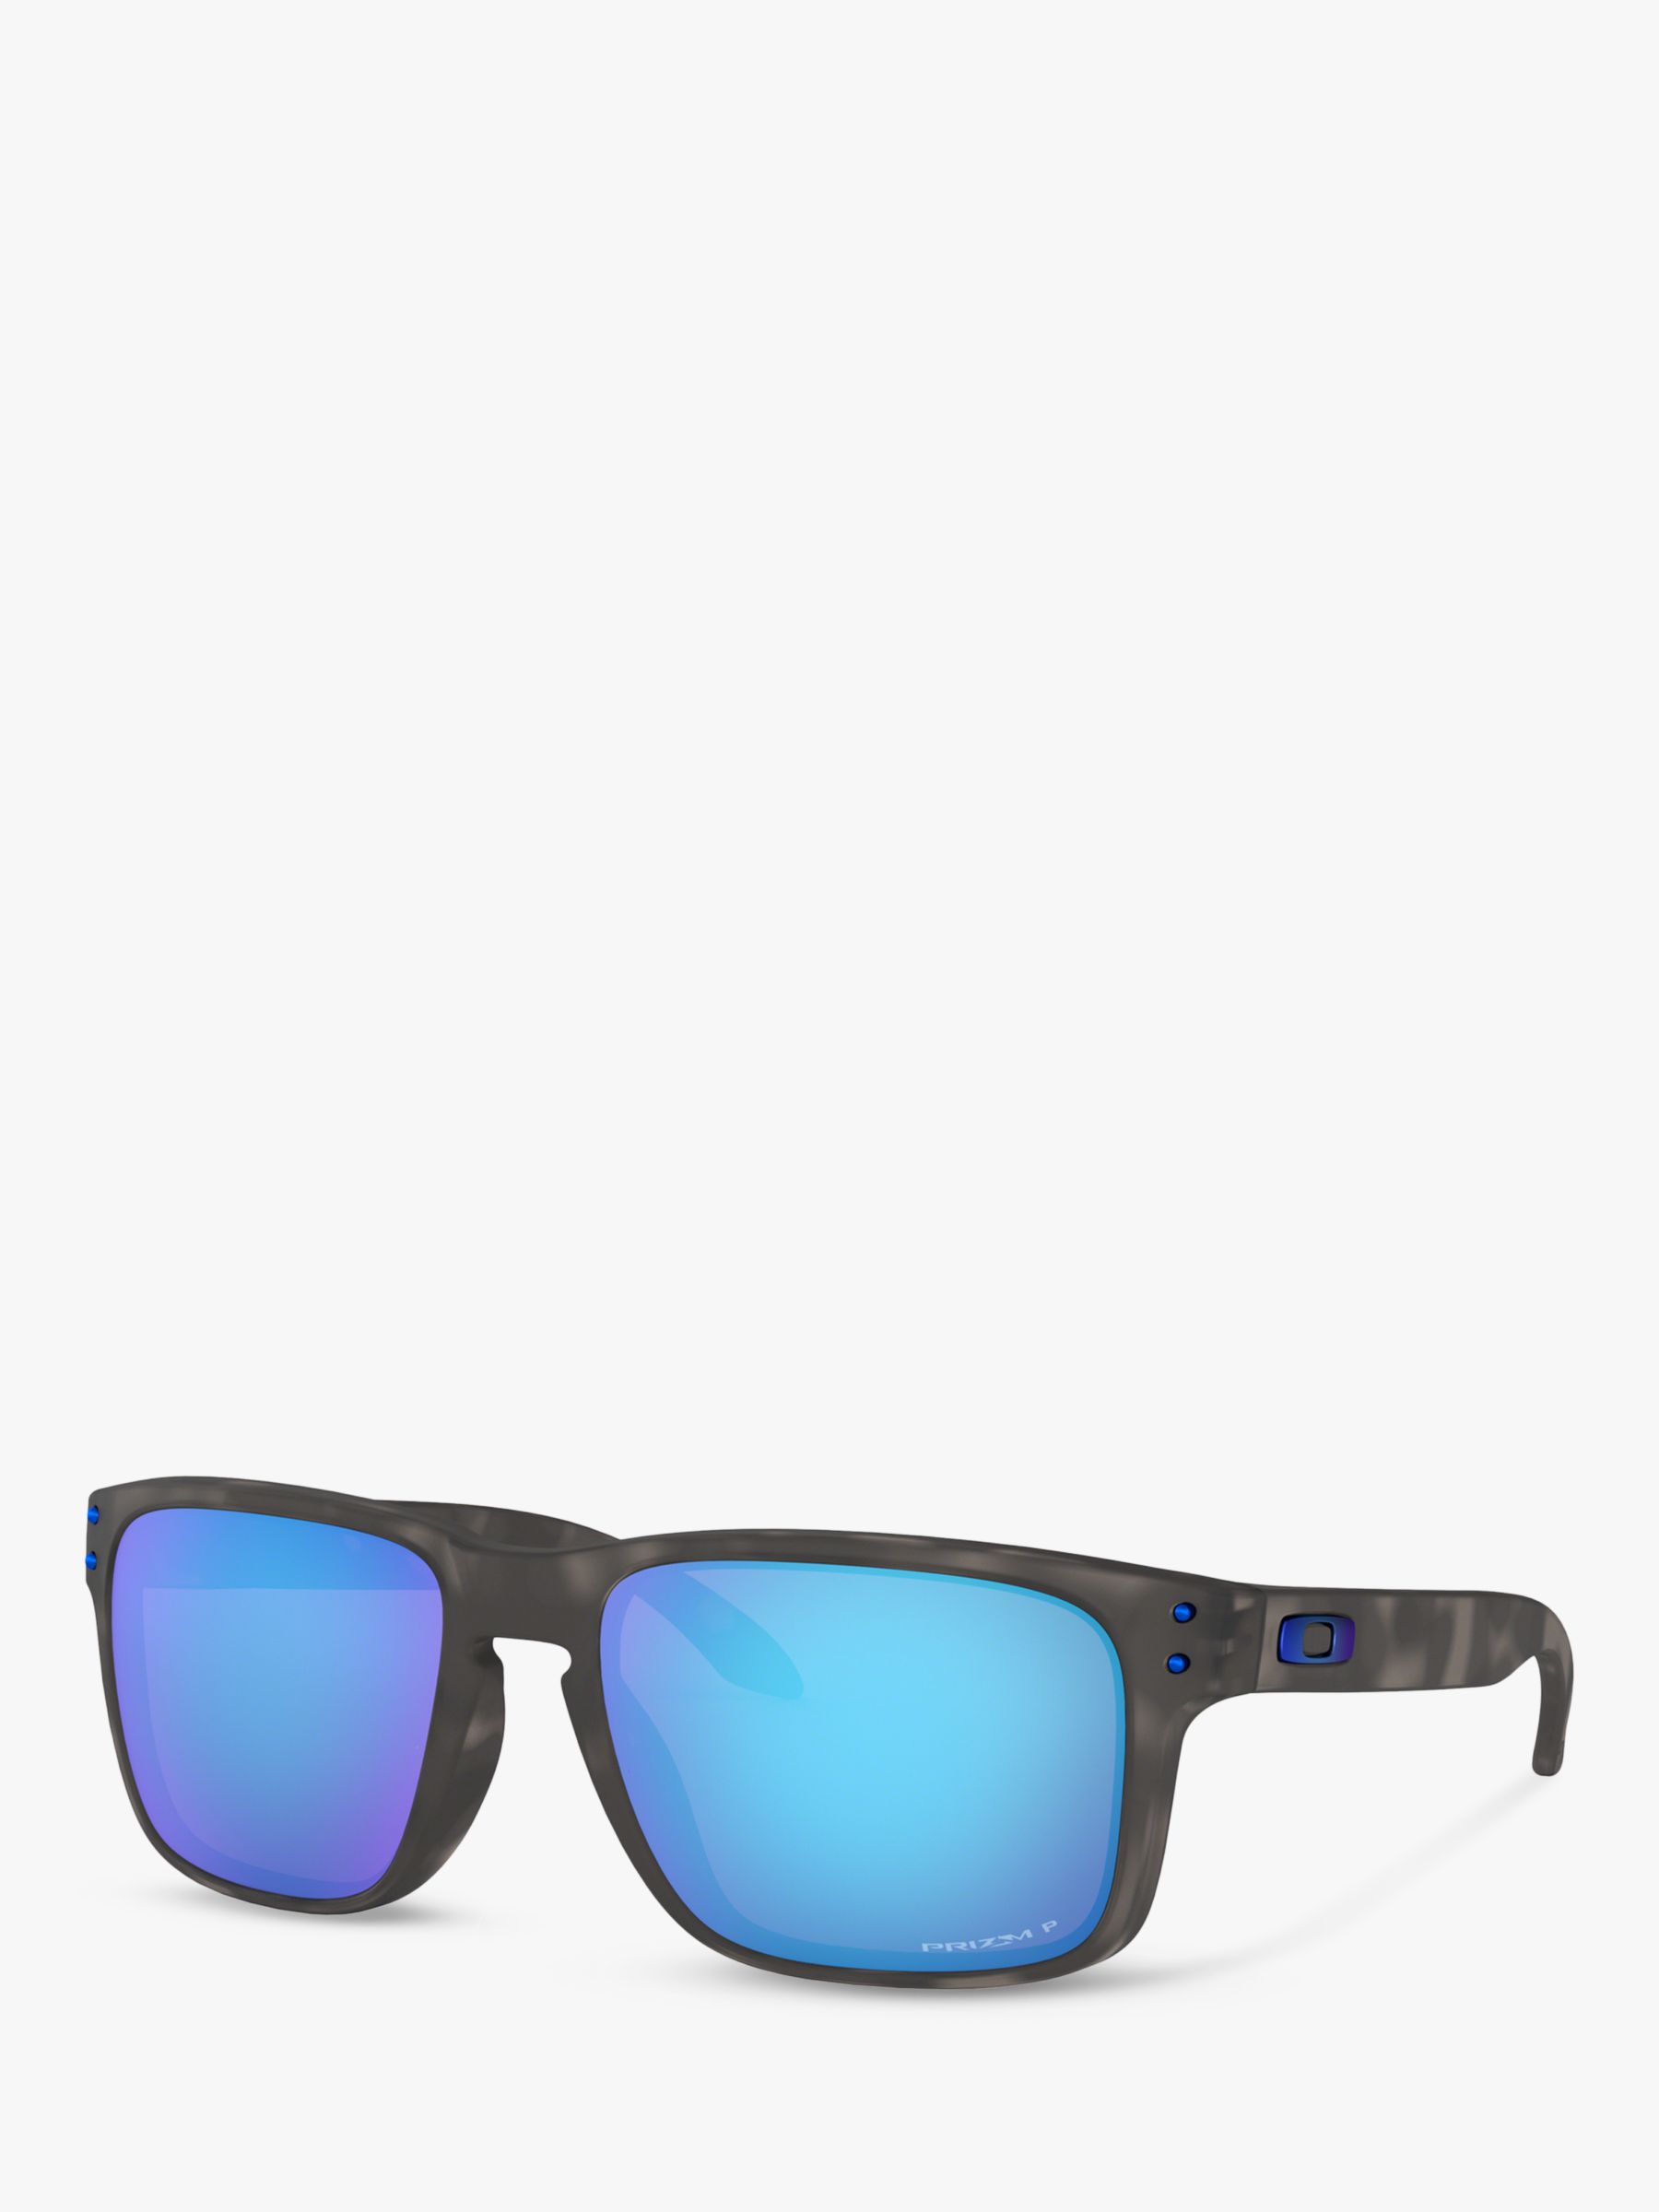 Мужские поляризационные квадратные солнцезащитные очки Oakley OO9102 Holbrook Prizm, черные/черепаховые цена и фото